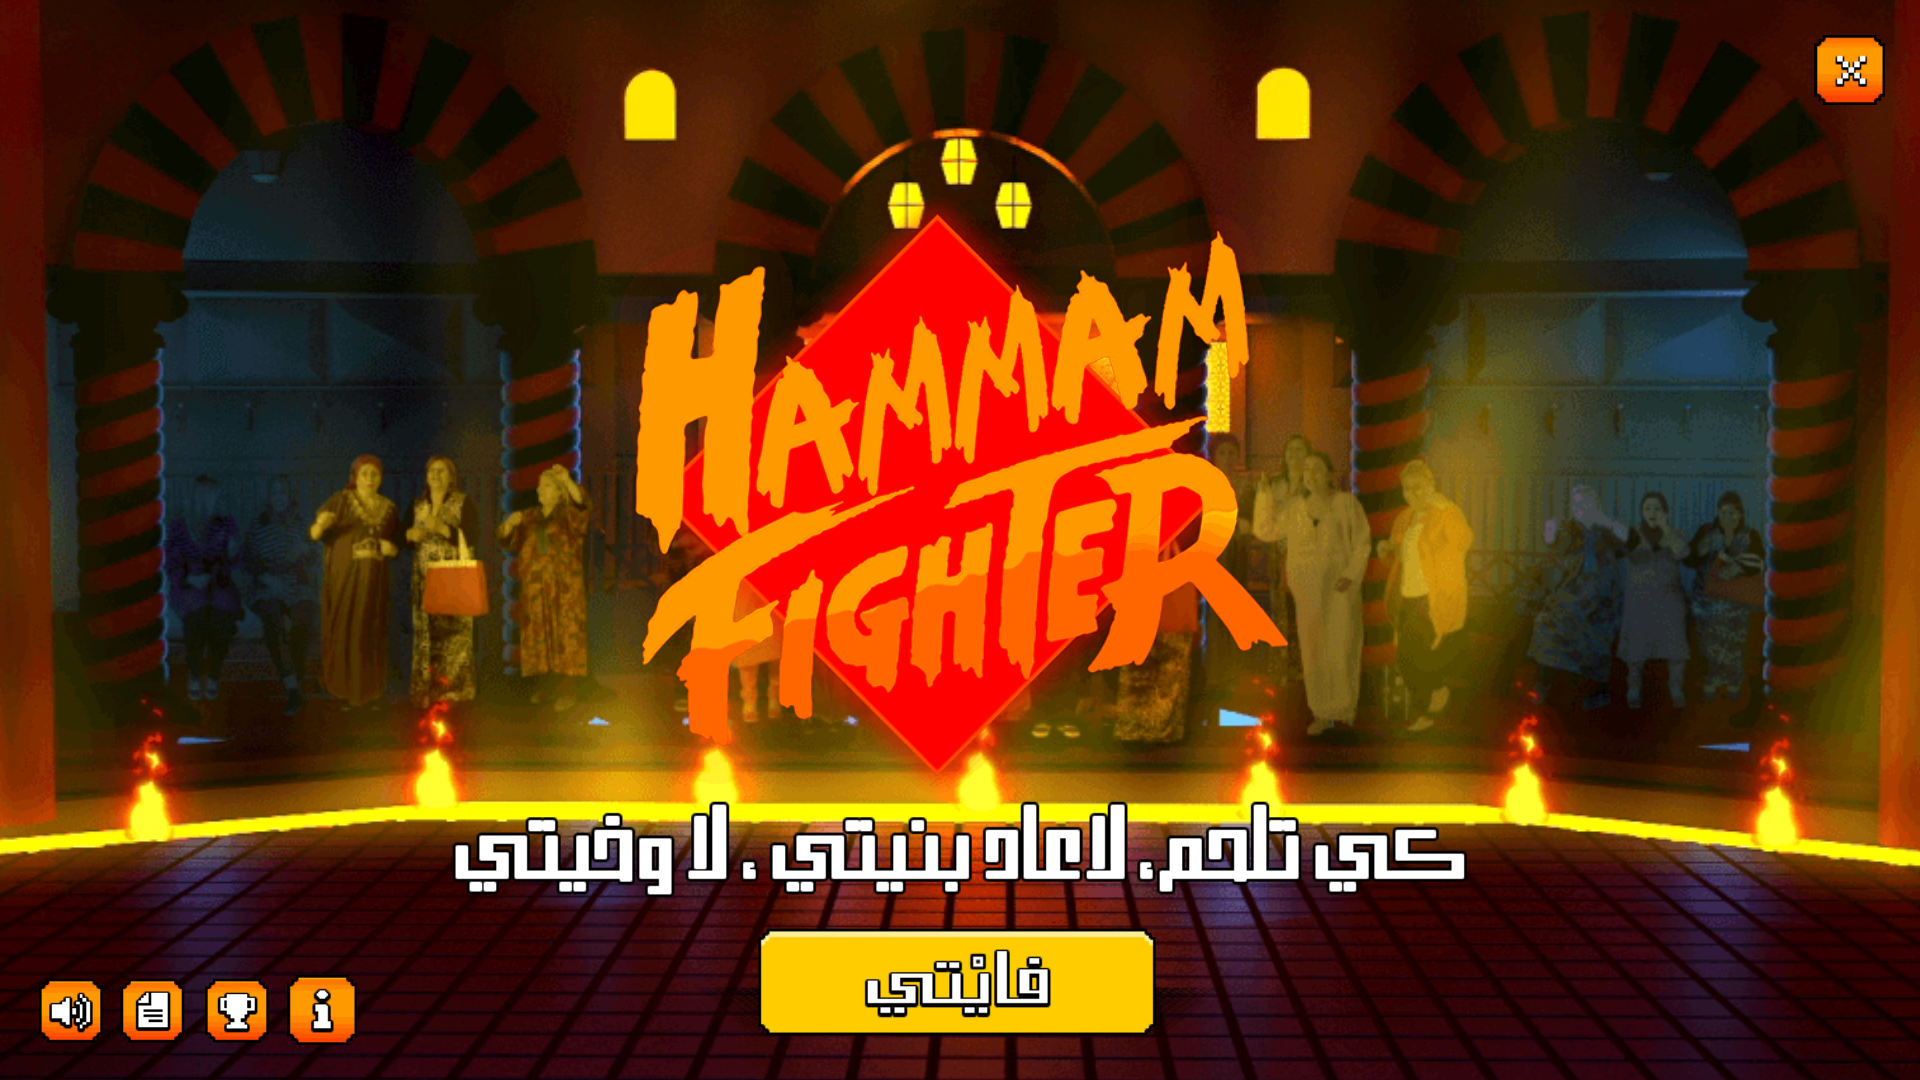 Screenshot 1 of អ្នកប្រយុទ្ធ Hammam 4.0